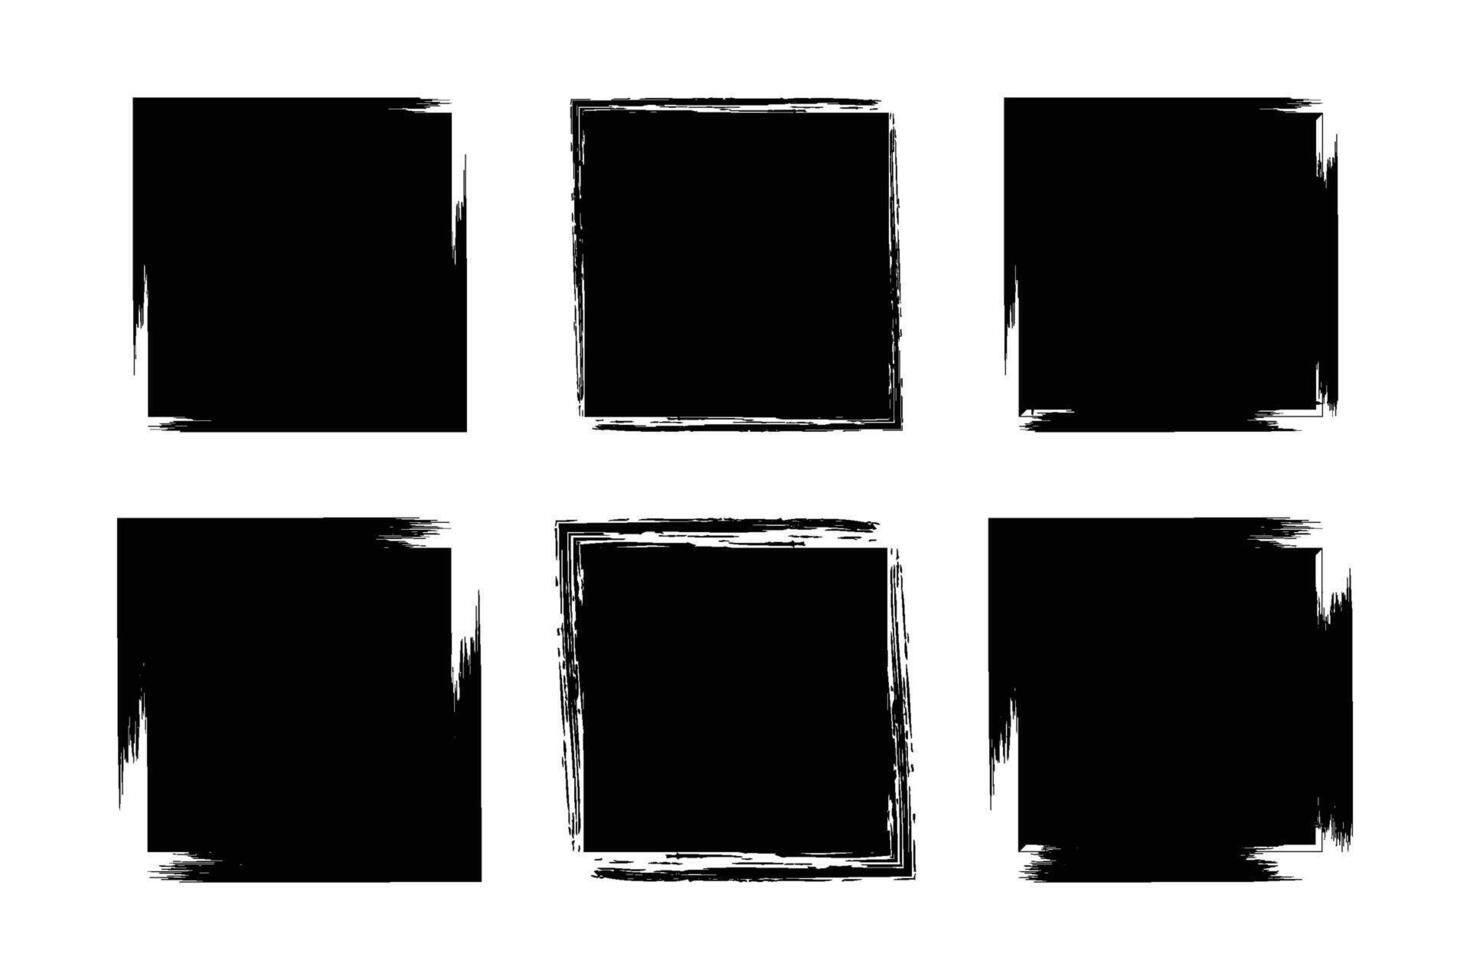 cuadrado forma glifo grunge forma cepillo carrera pictograma símbolo visual ilustración conjunto vector